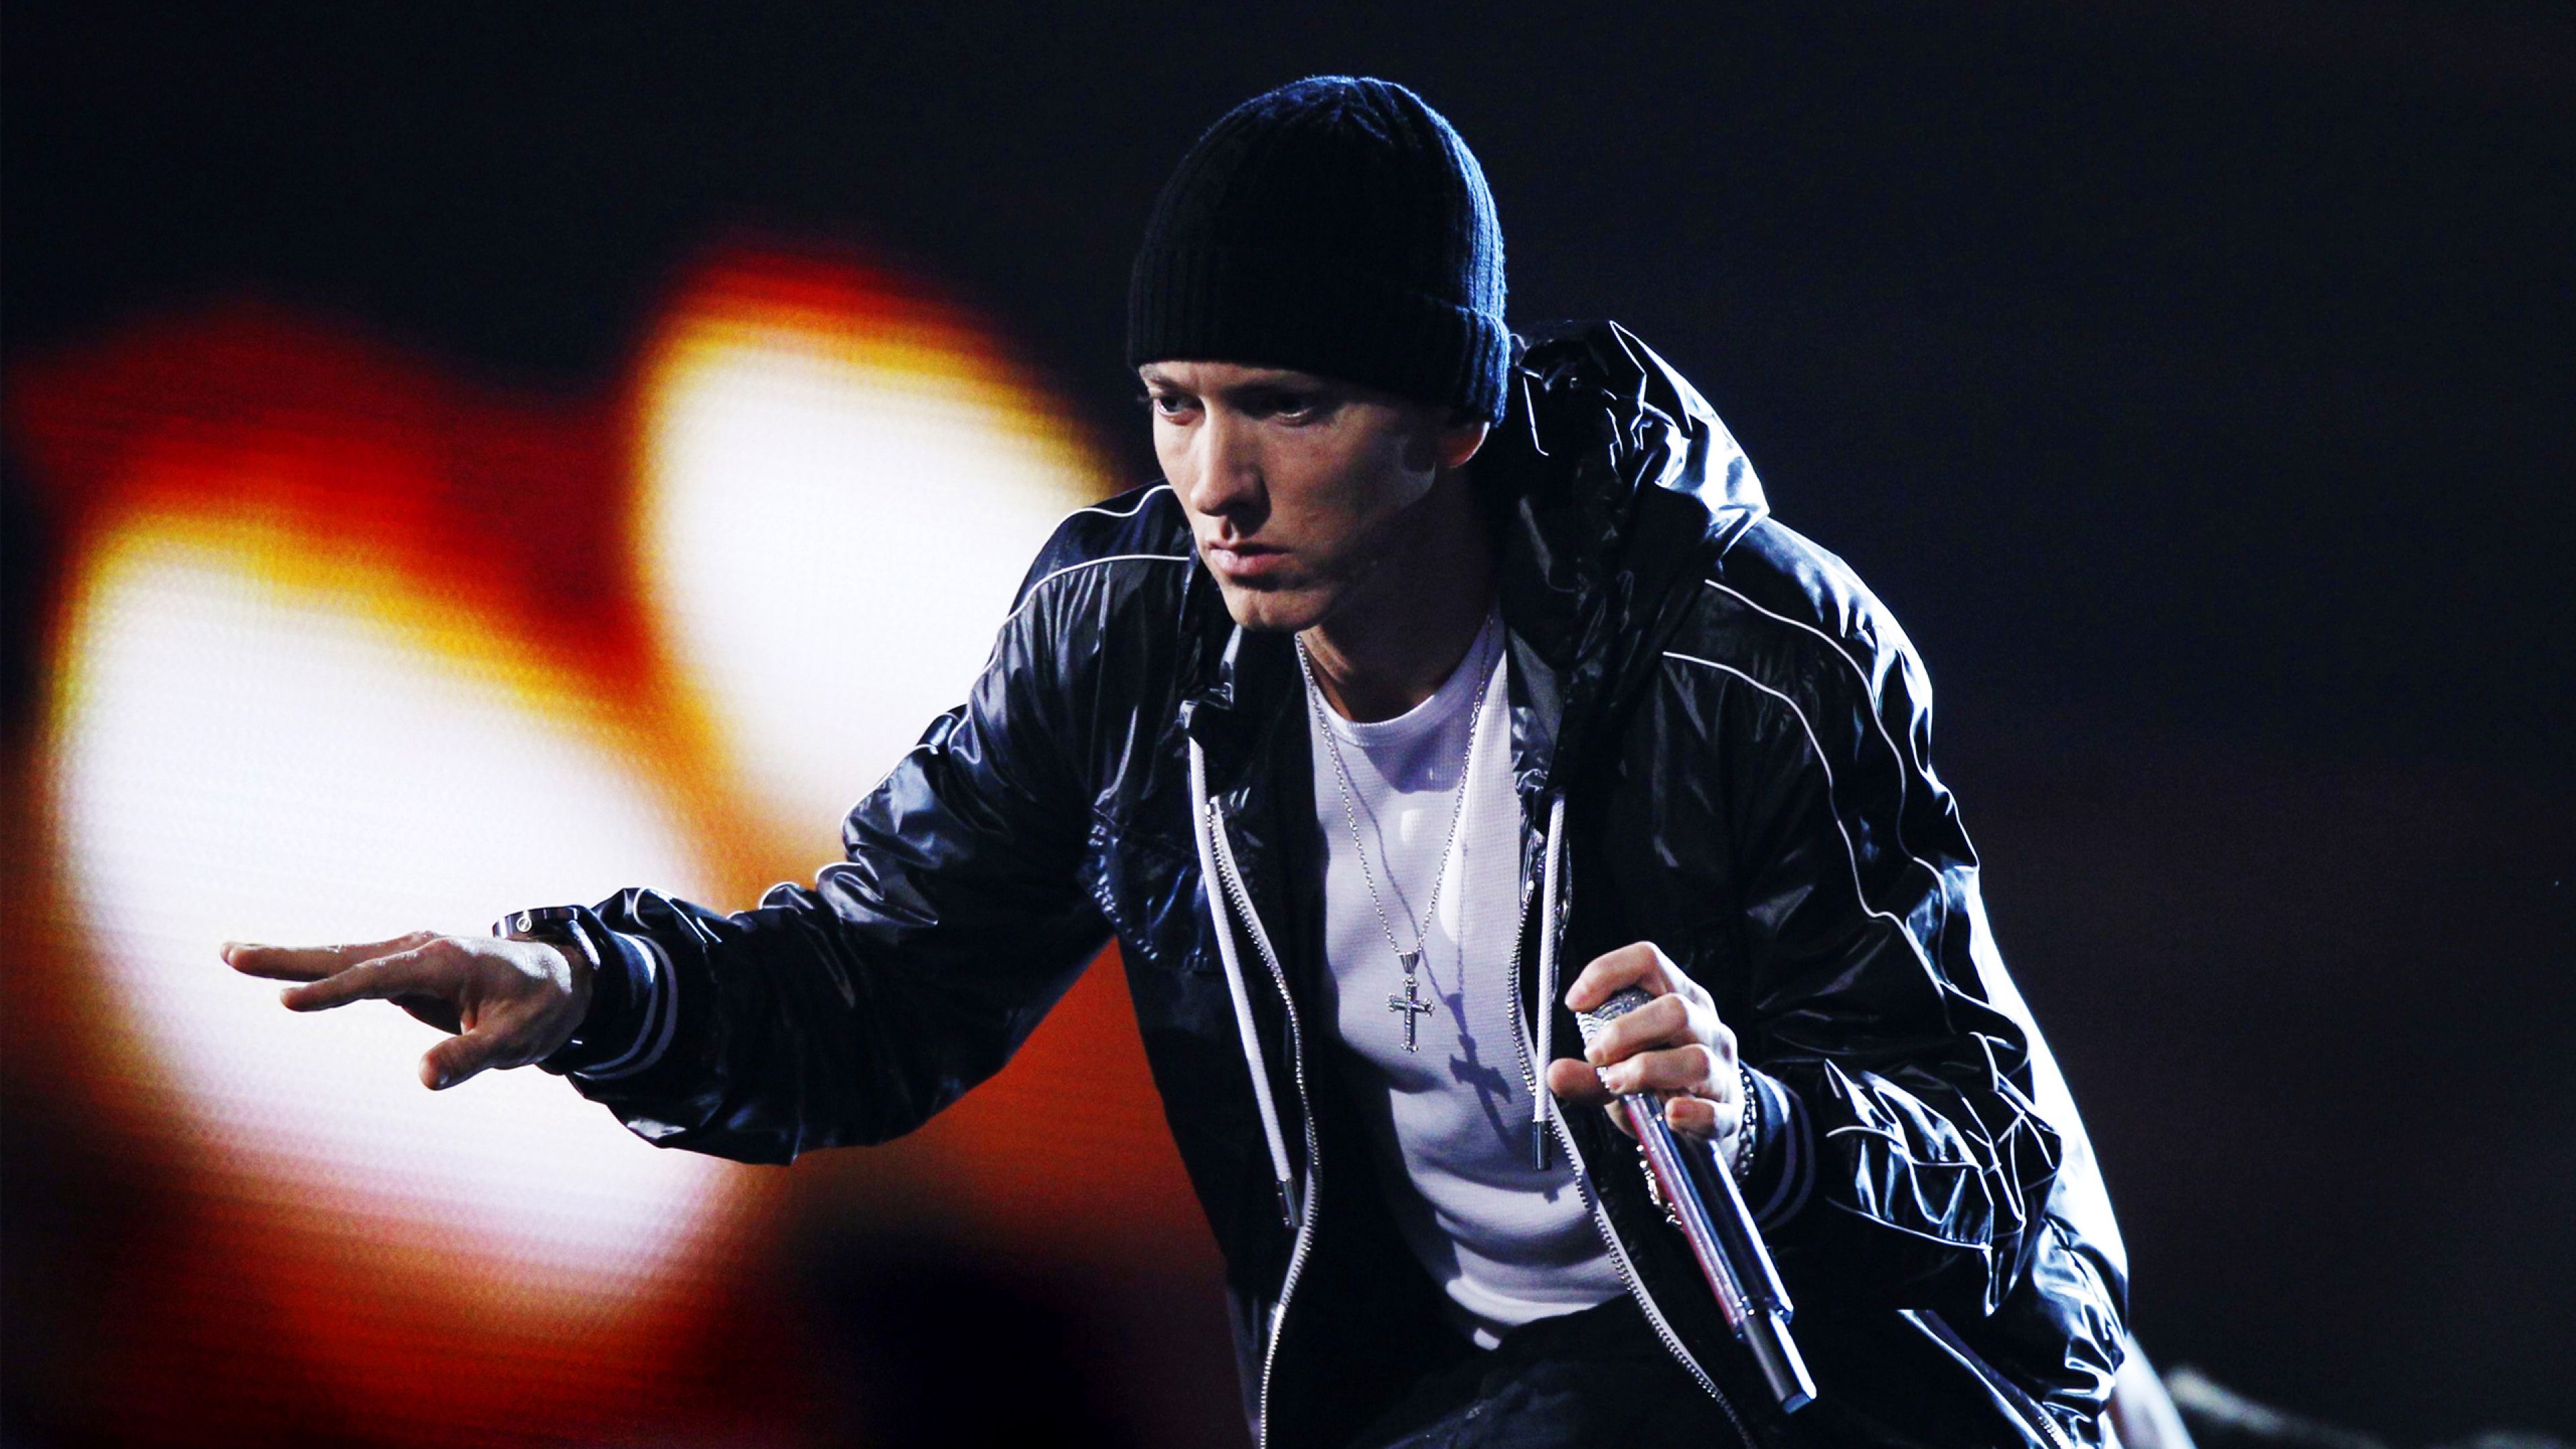 Download Wallpaper 3840x2160 Eminem, Singer, Rapper, Hip-hop 4K ...